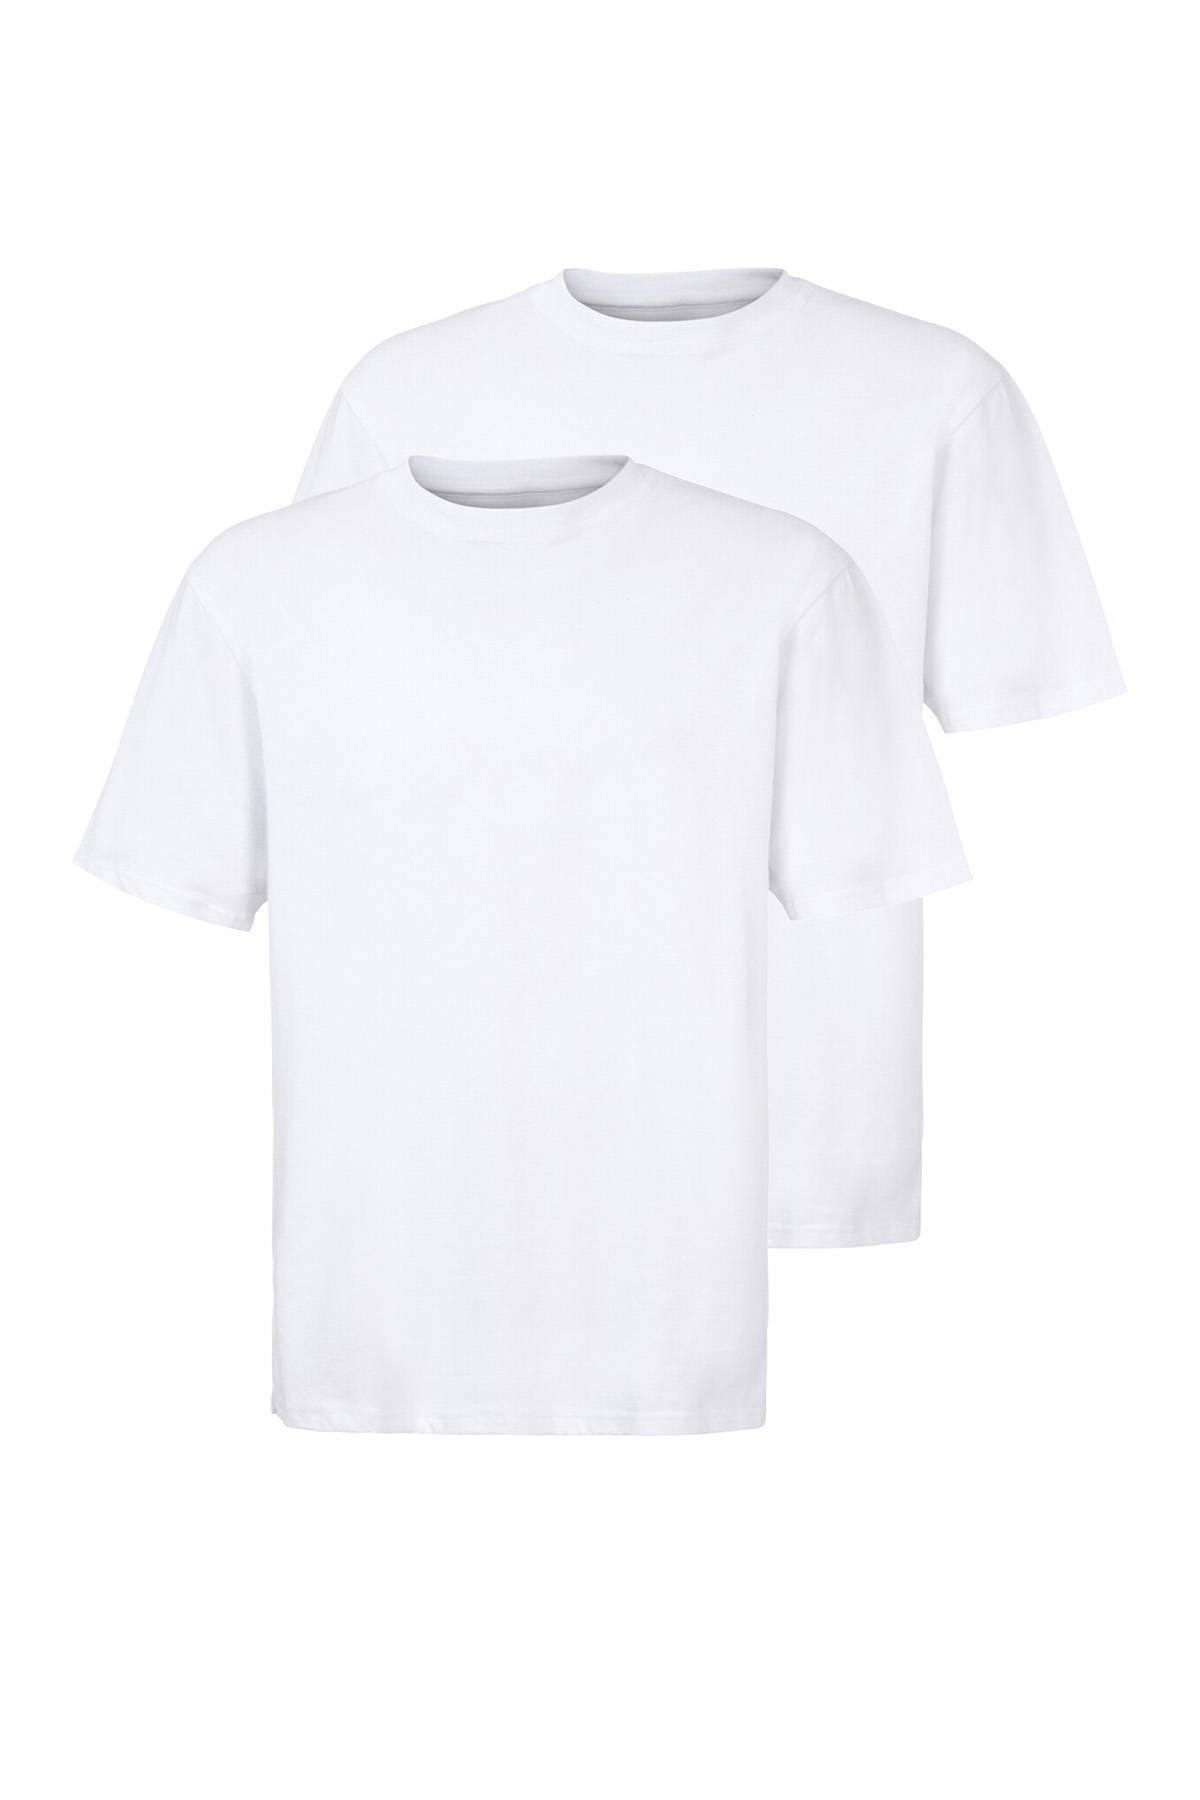 Jan Vanderstorm T shirt ERKE (set van 2 ) online kopen